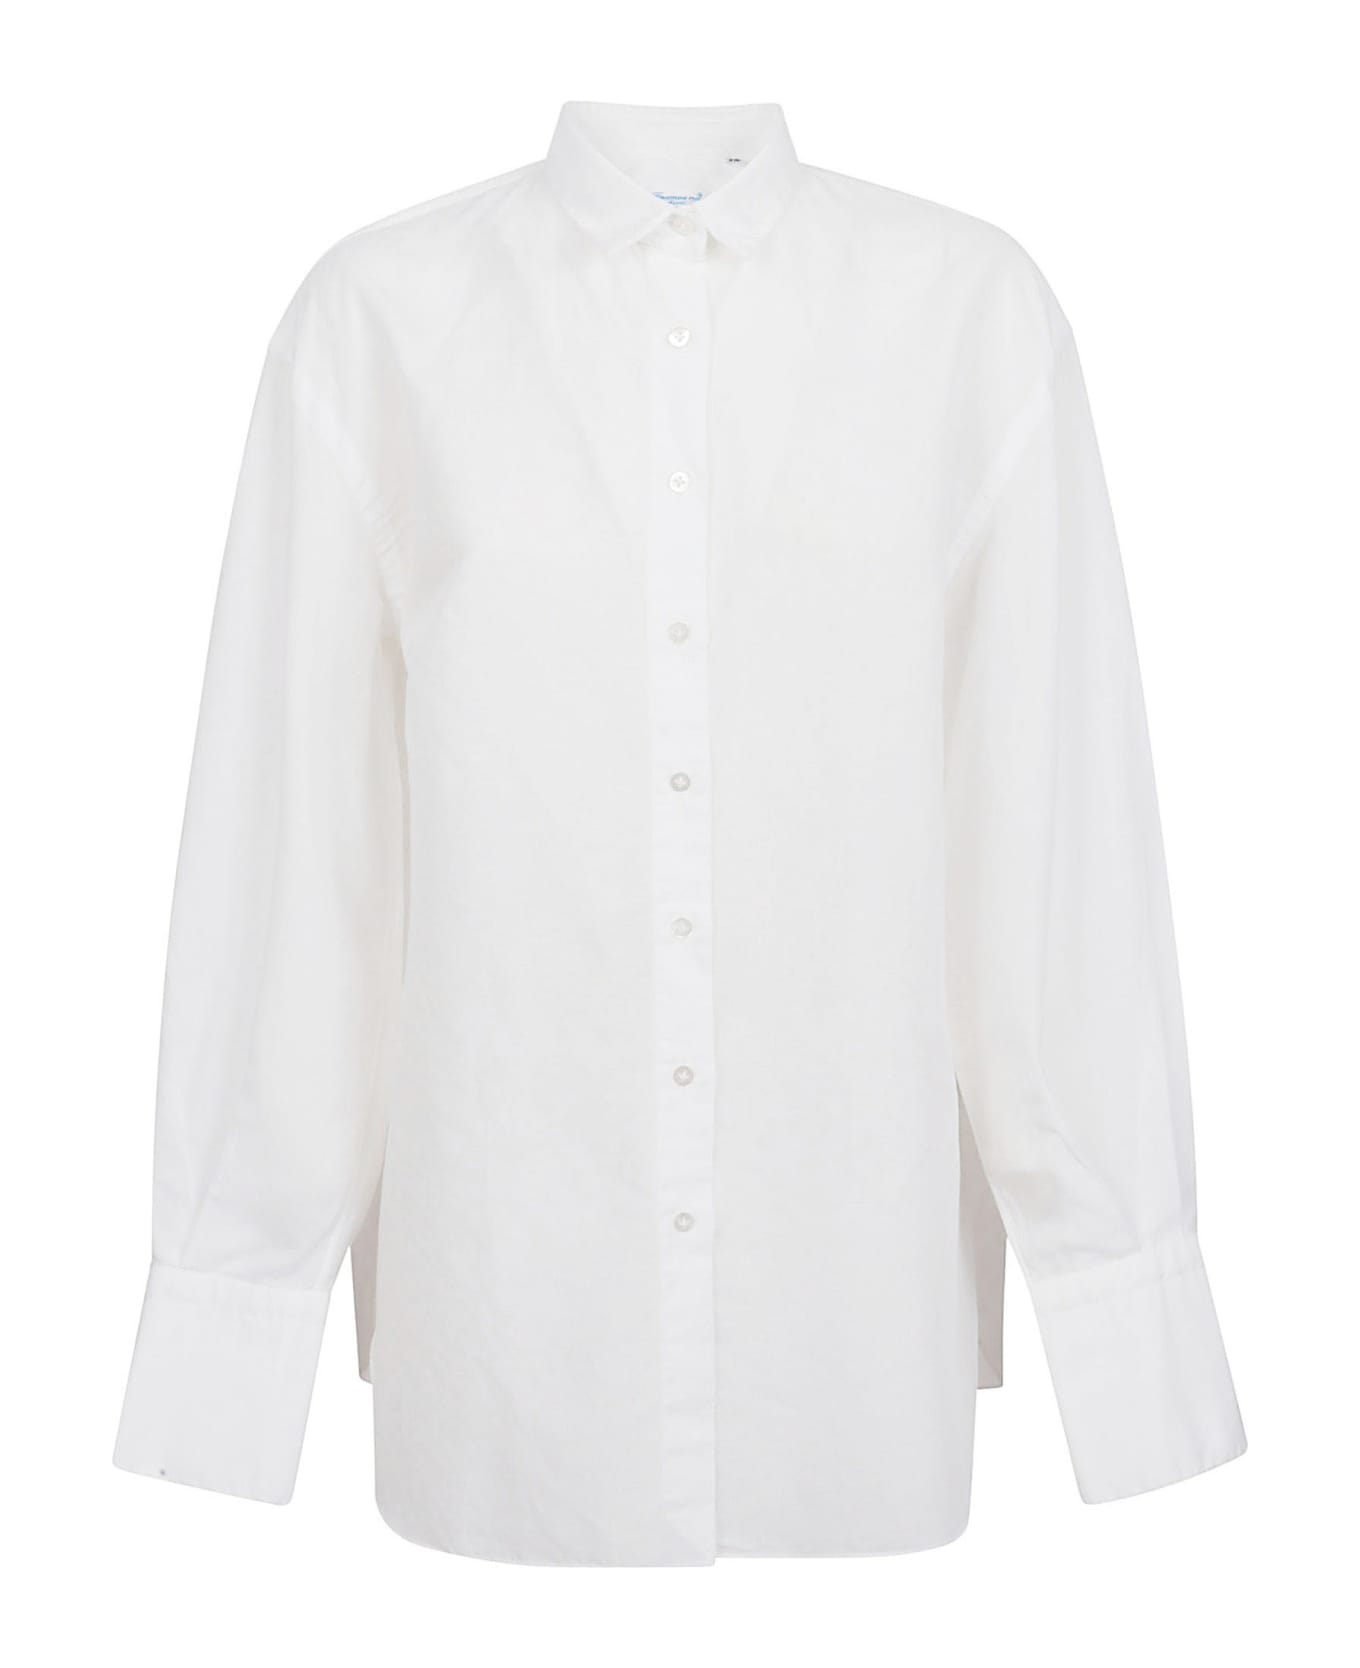 Finamore Shirts White - White